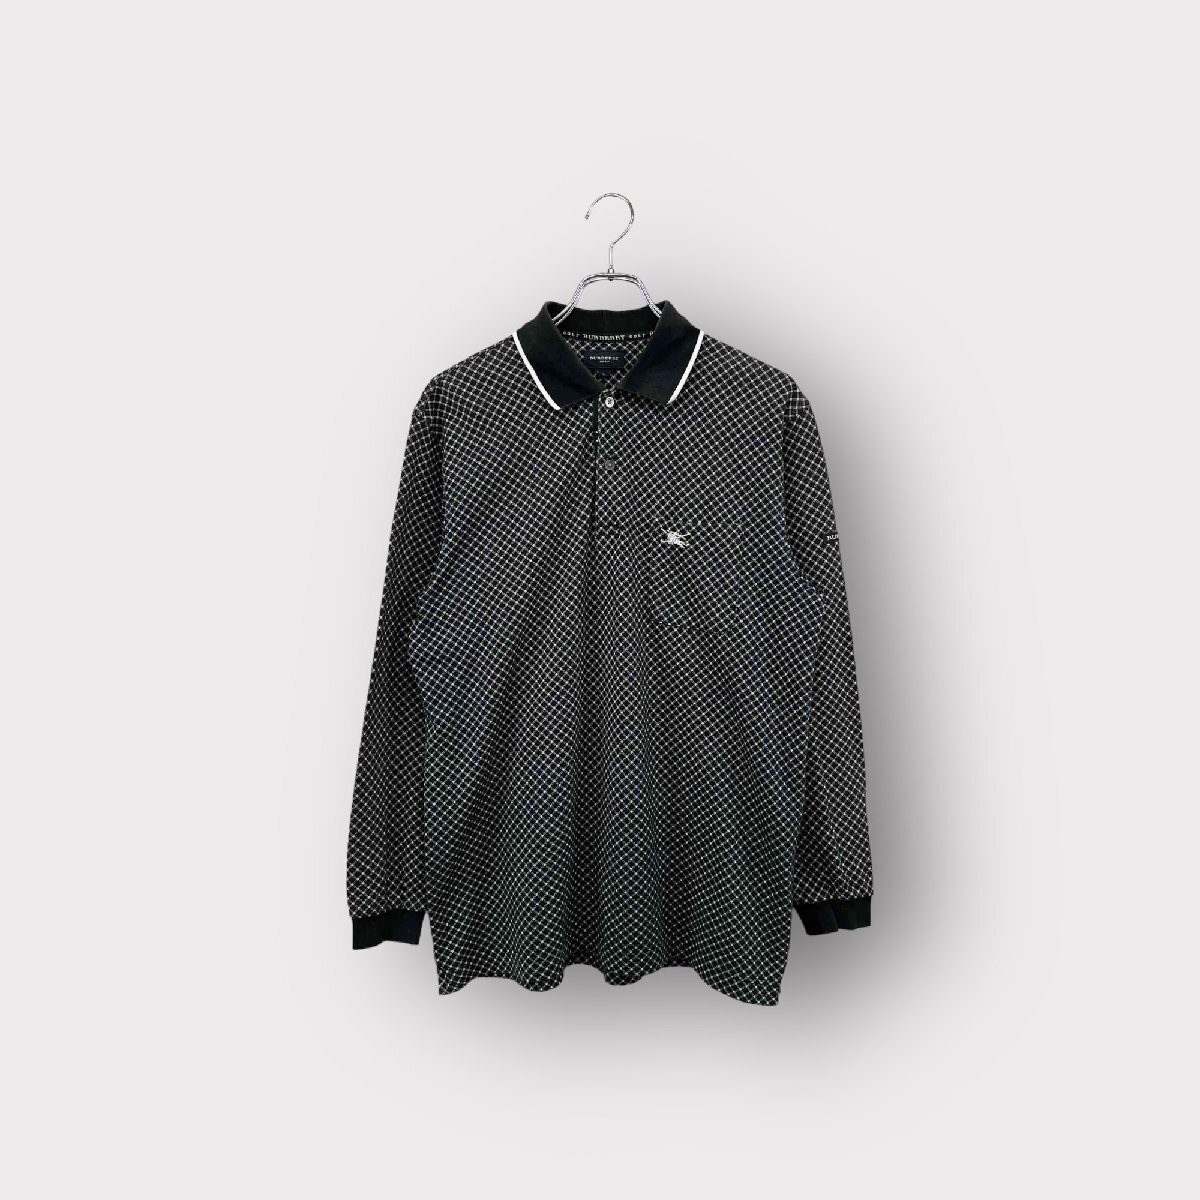 BURBERRY GOLF Burberry Golf рубашка-поло с длинным рукавом черный размер L общий рисунок tops мужской Vintage ne